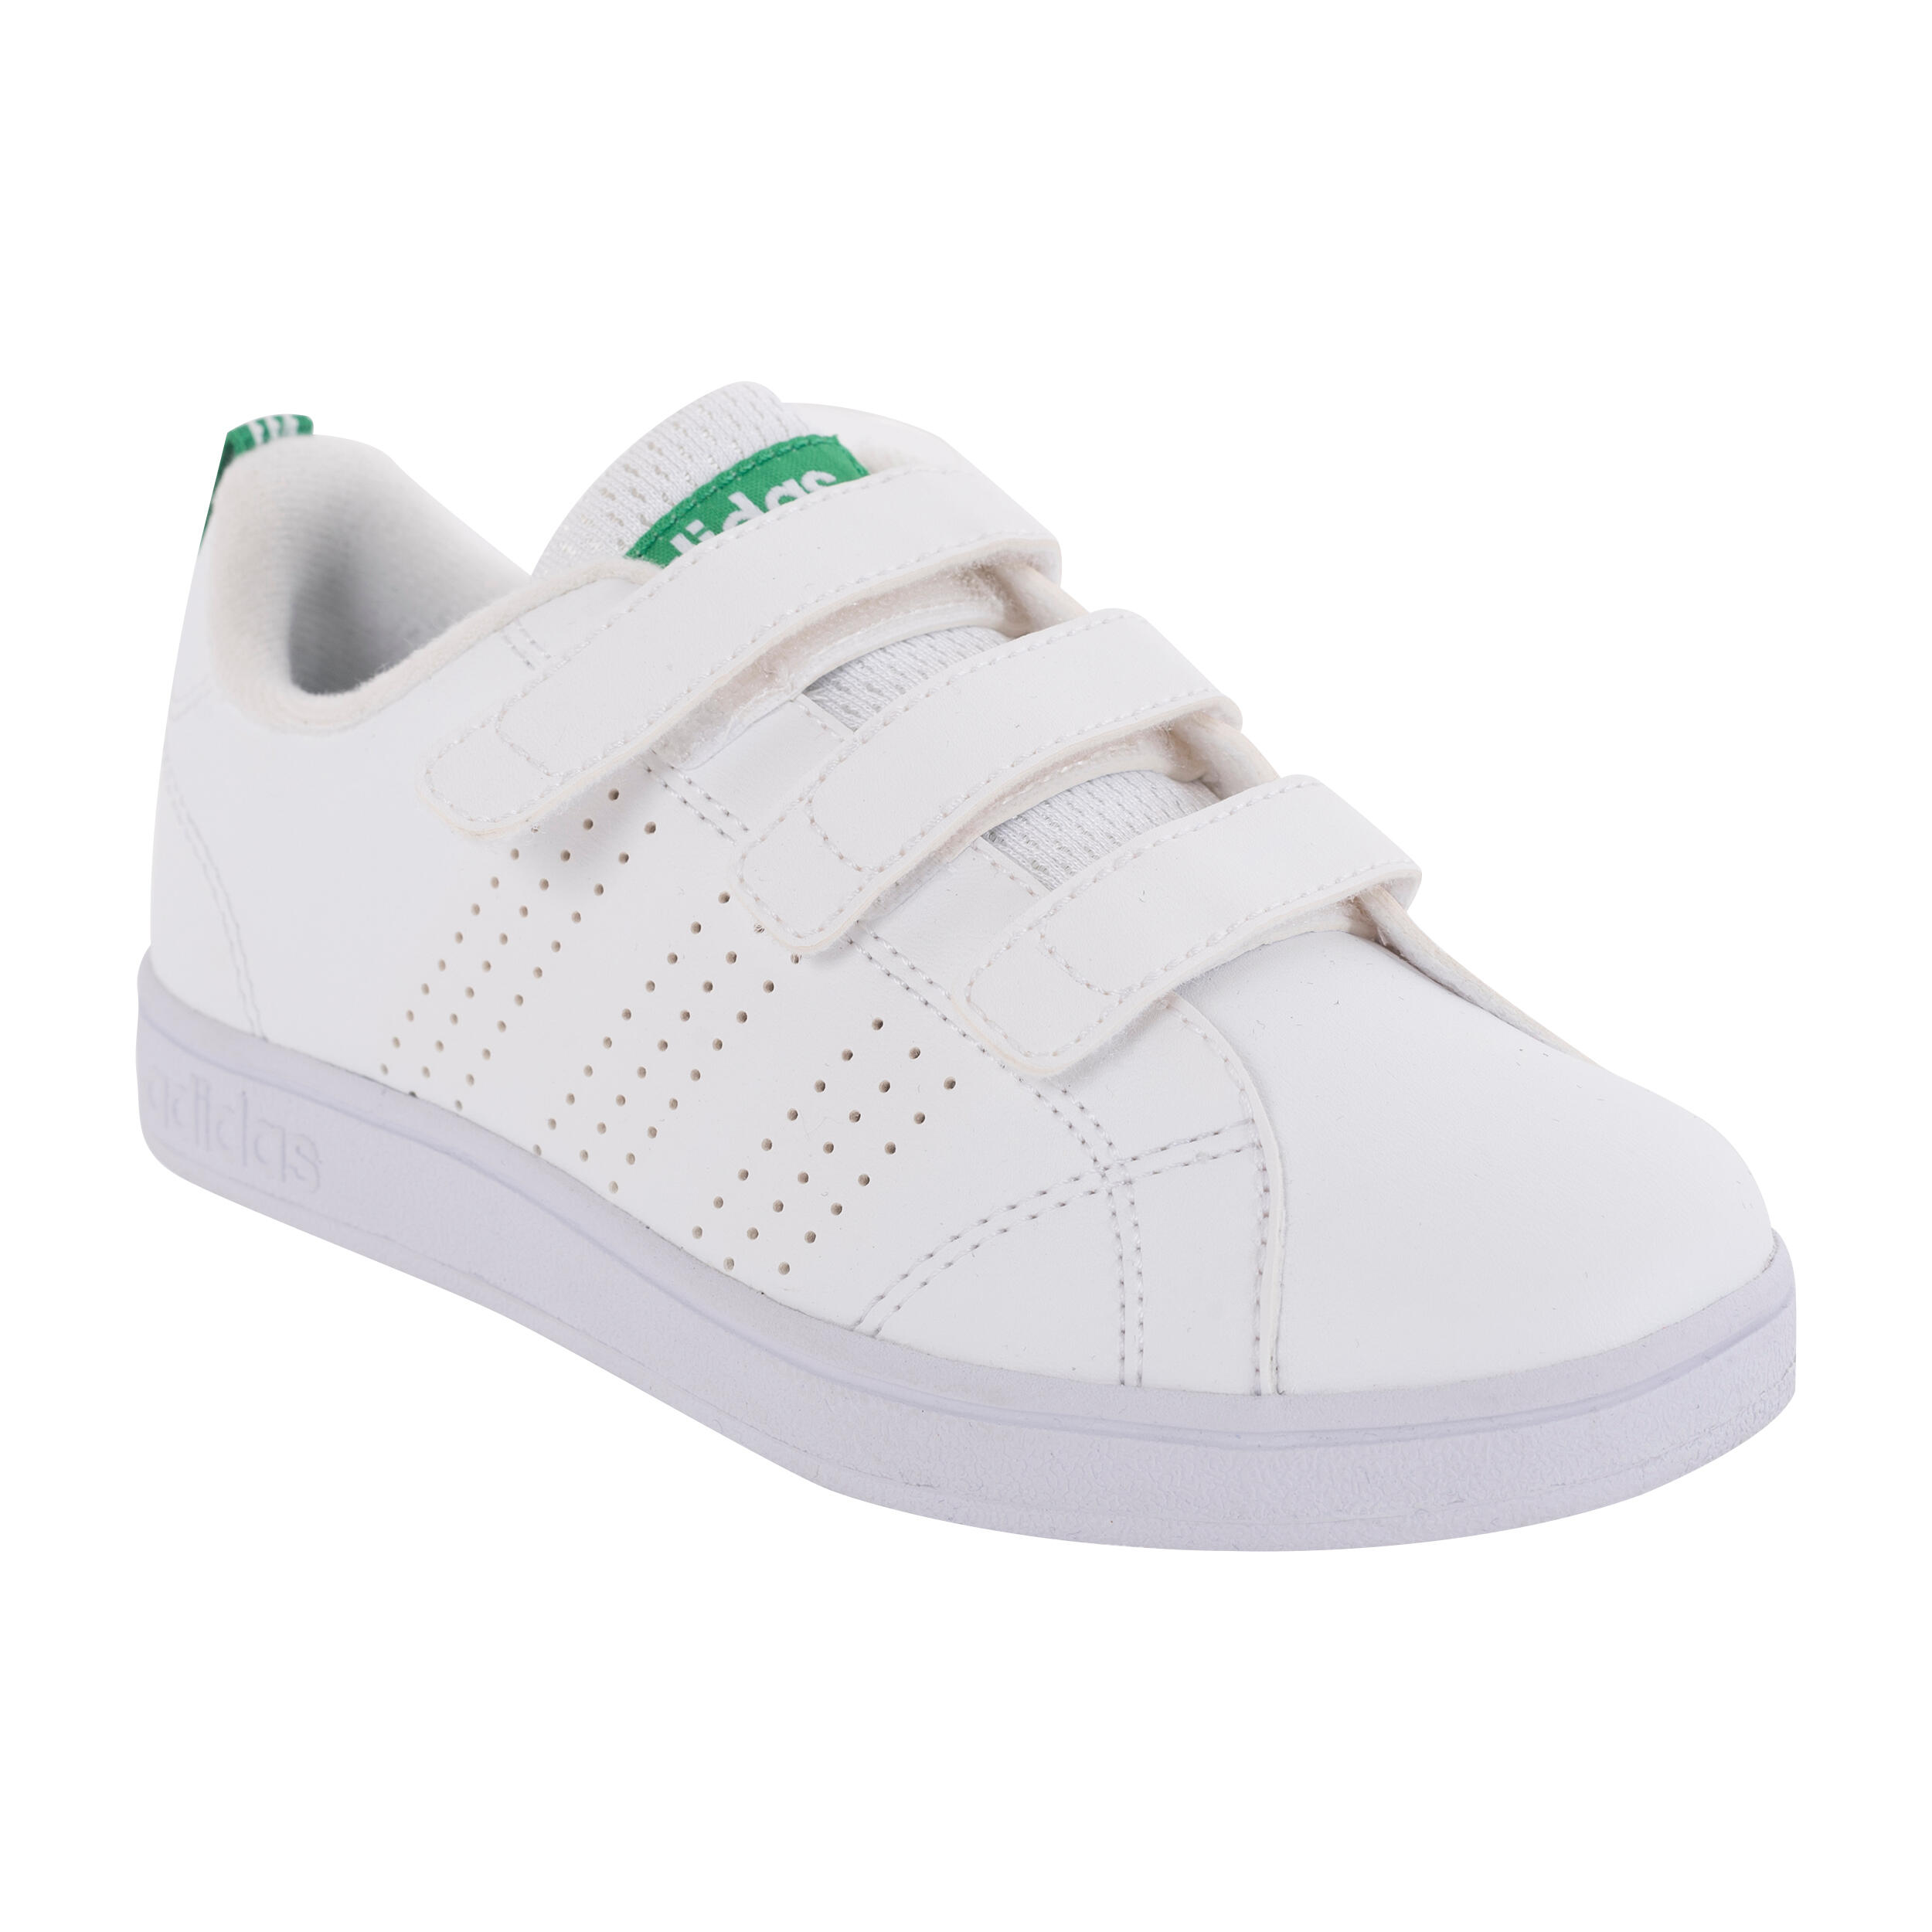 Neo Advantage Clean Kids' Tennis Shoes 